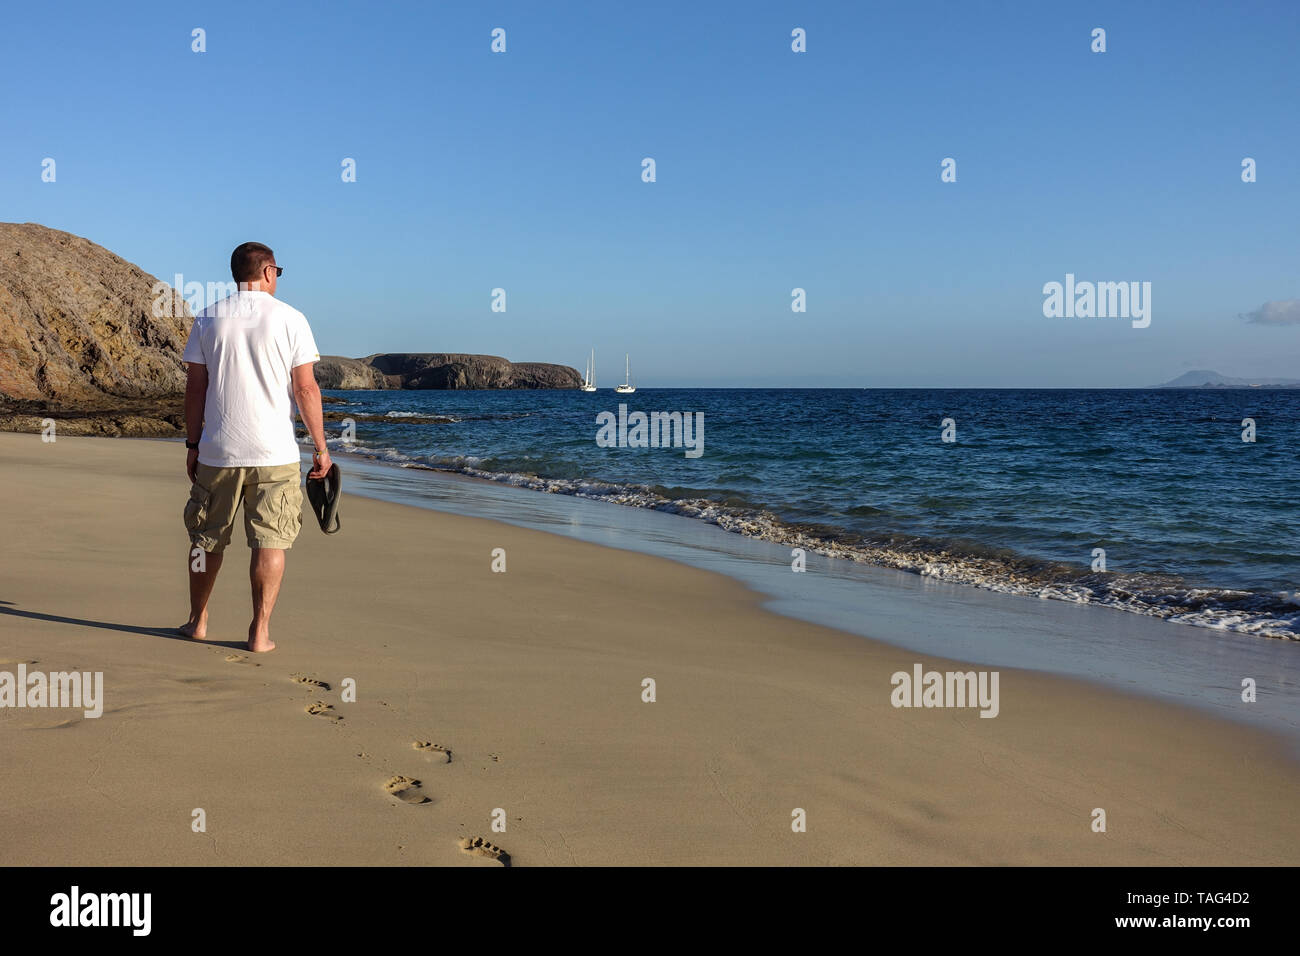 Ein erwachsener Mann Spaziergänge entlang einer ruhigen einsamen Strand Papagayo auf Lanzarote, gefangen in der Abendsonne die Ansicht zeigt die Rückseite des mittleren Alter Mann Stockfoto